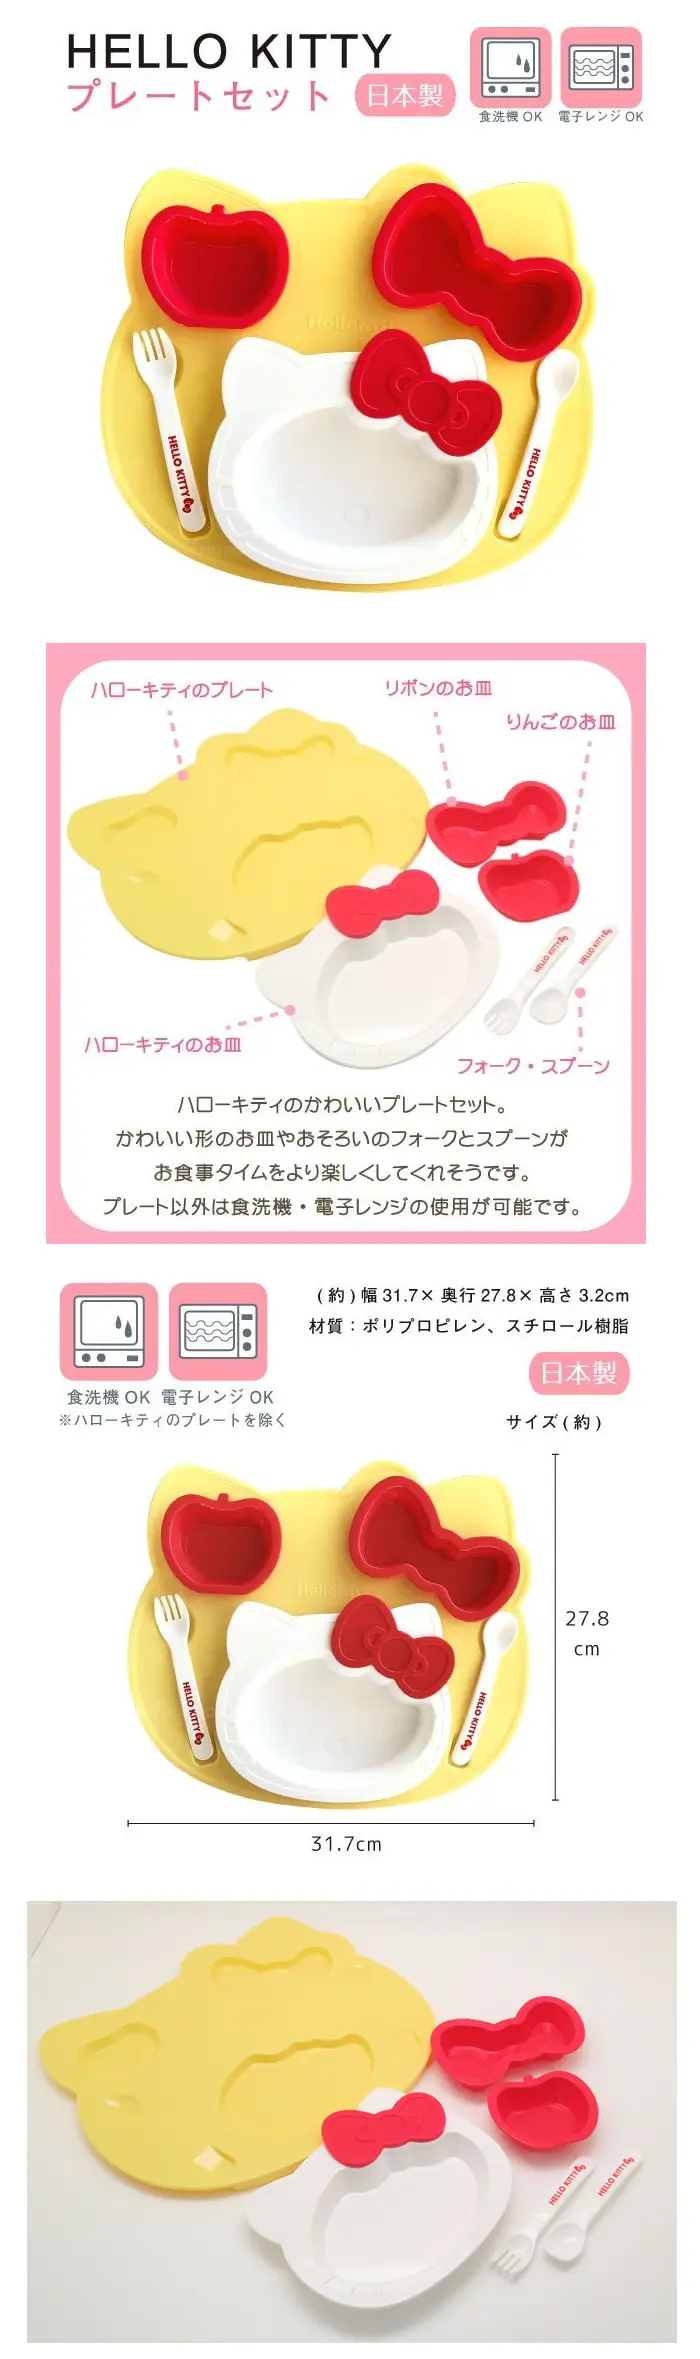 Hello Kitty 嬰幼兒餐具套裝-6件裝